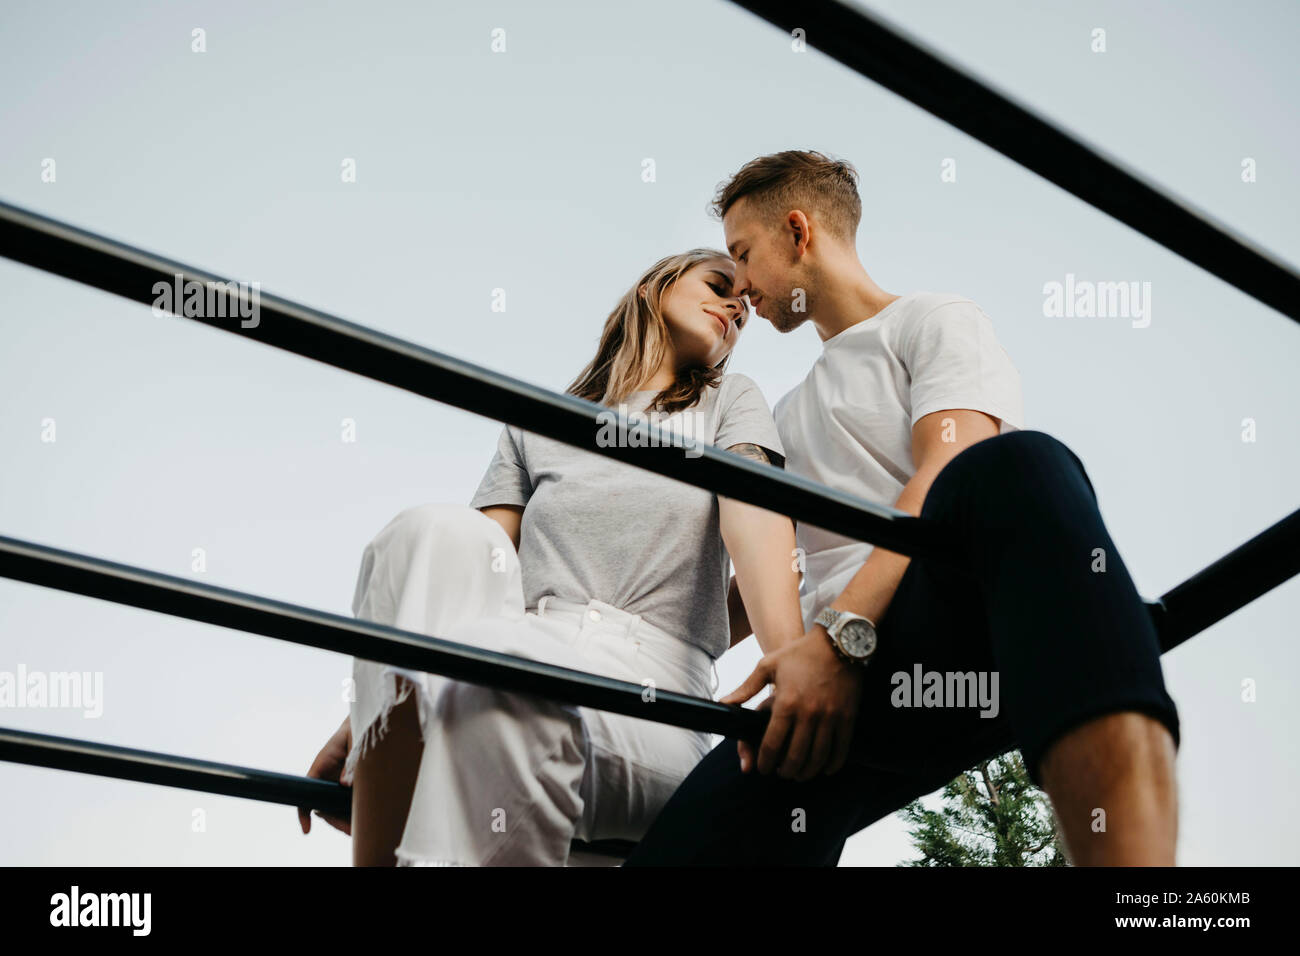 Joven pareja besándose mutuamente en un marco de escalada Foto de stock